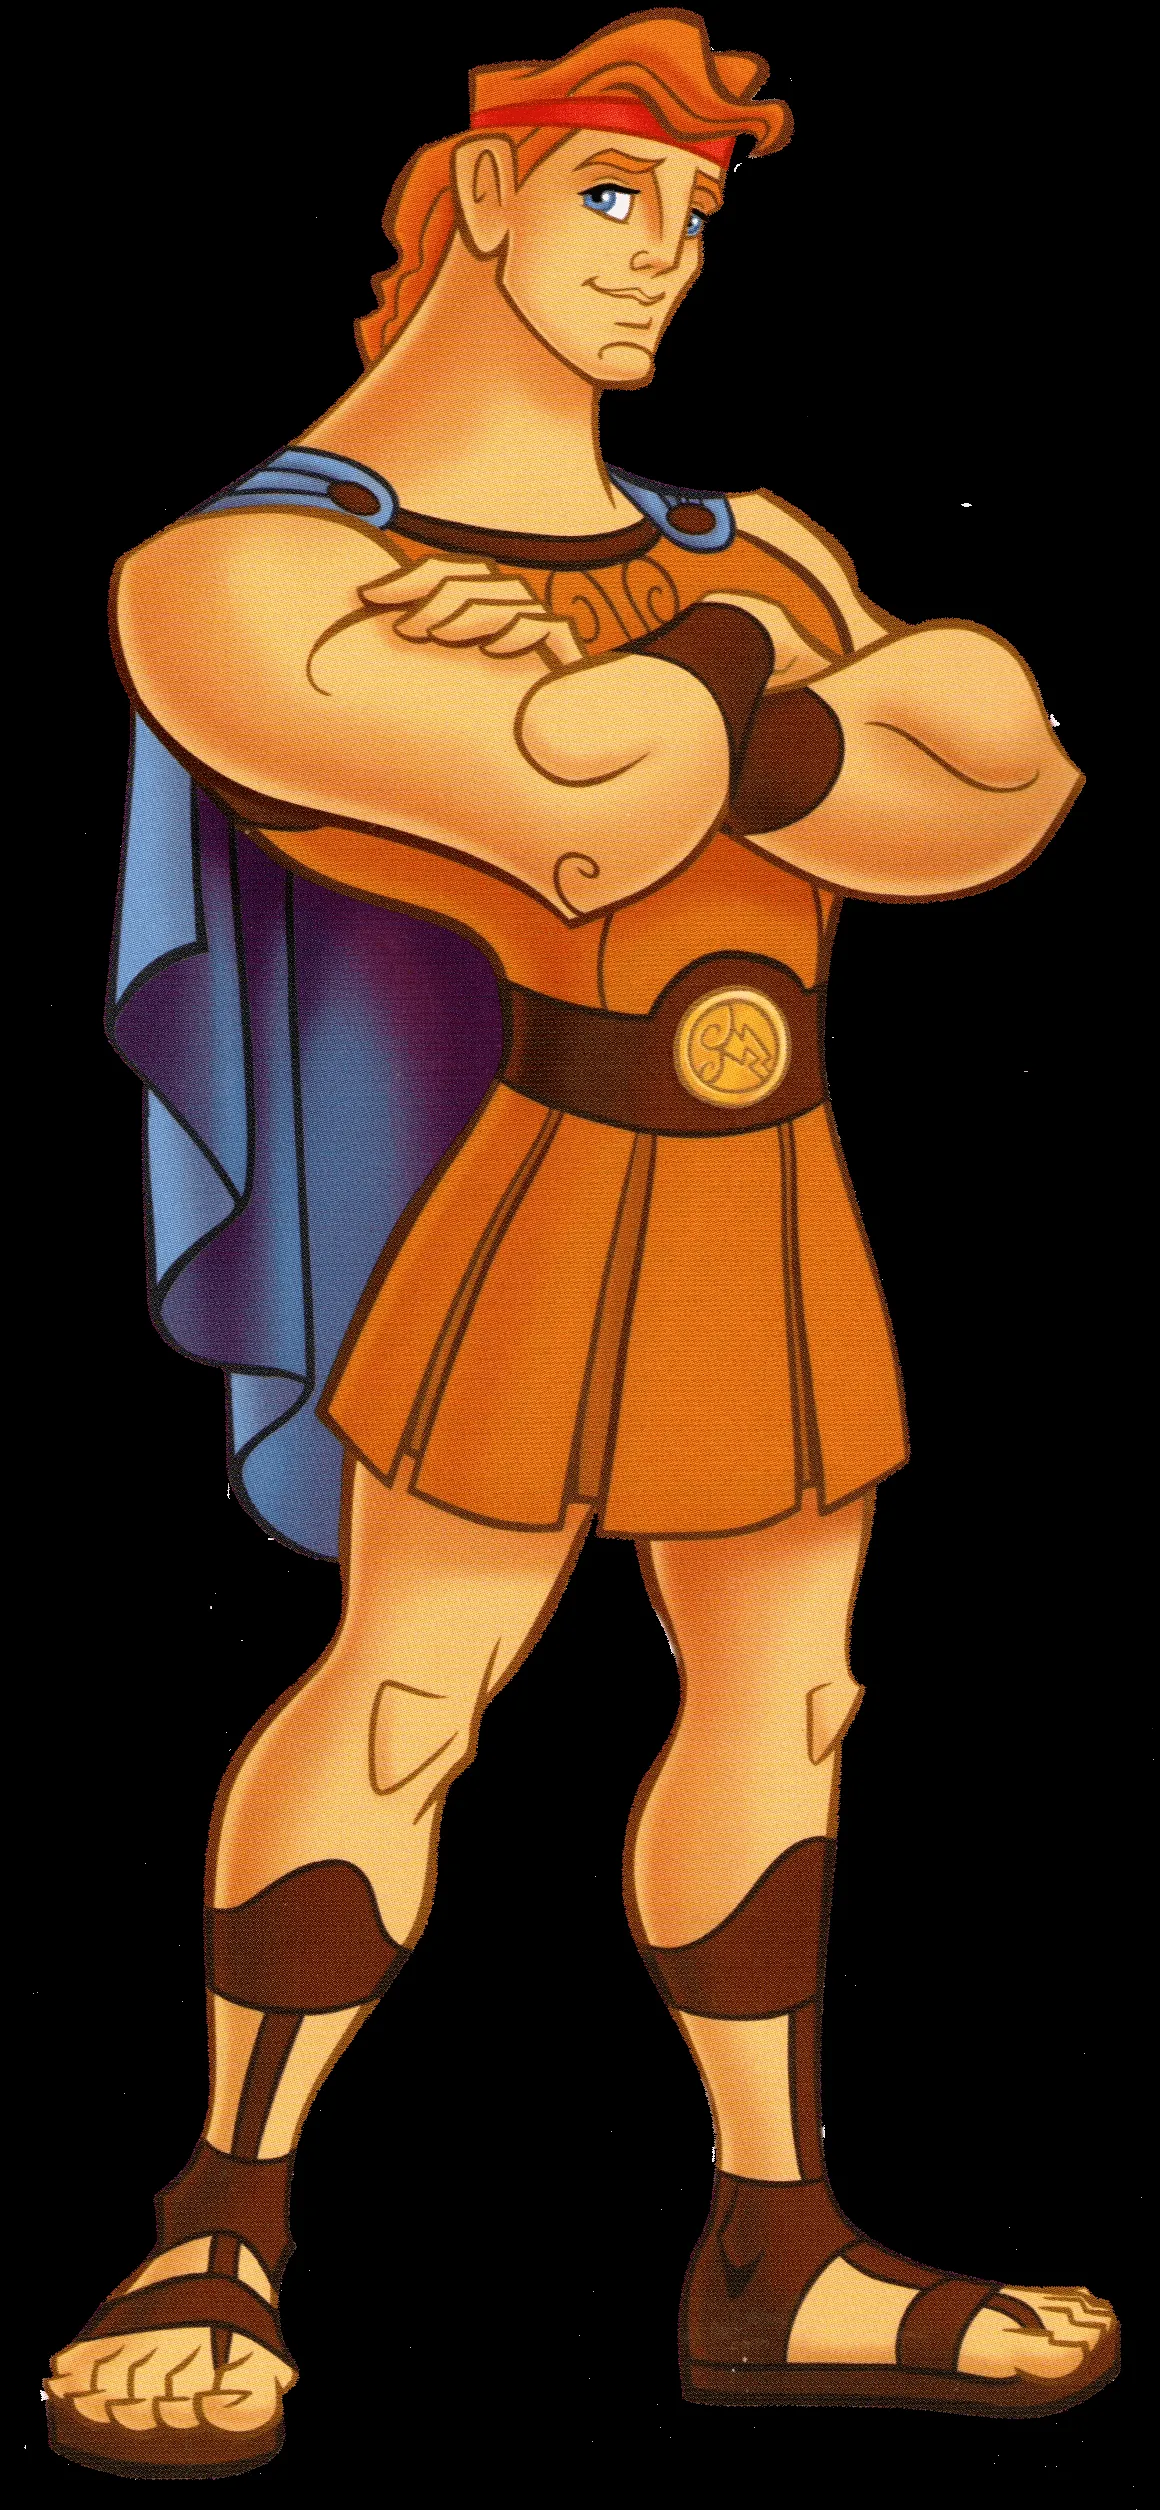 Hercules (character) - DisneyWiki